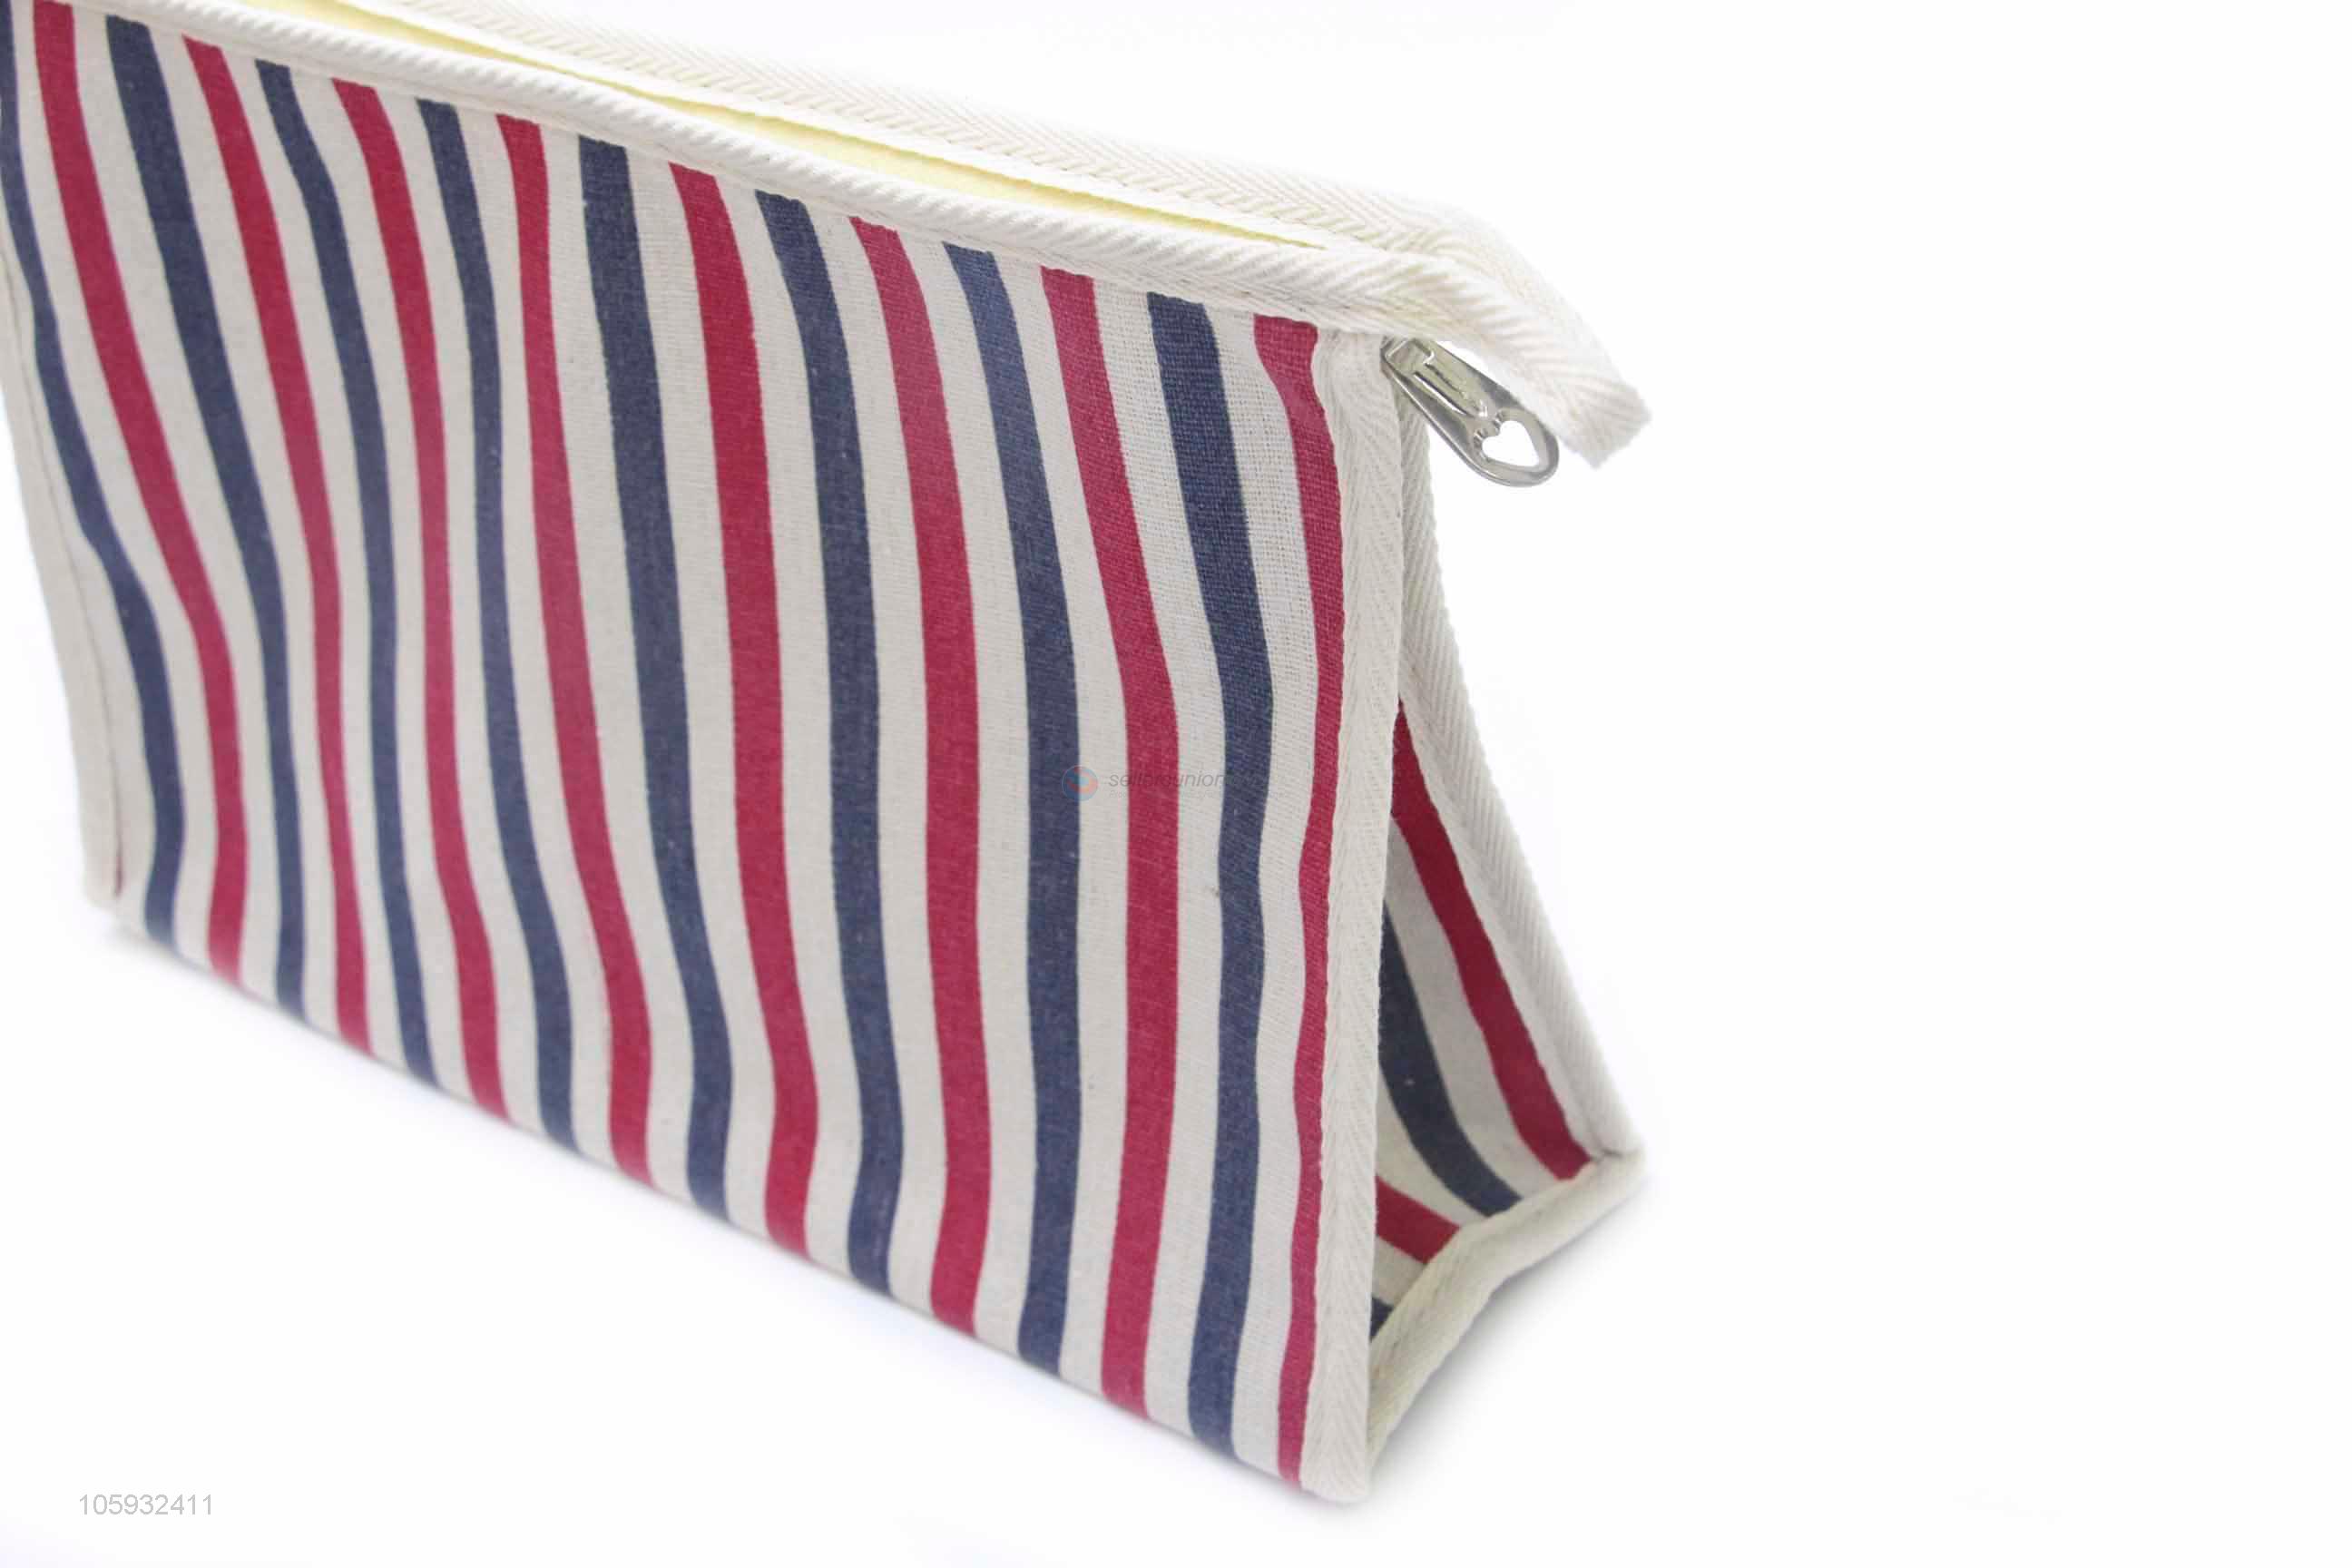 Cheap Price Stripes Lace Storage Bag